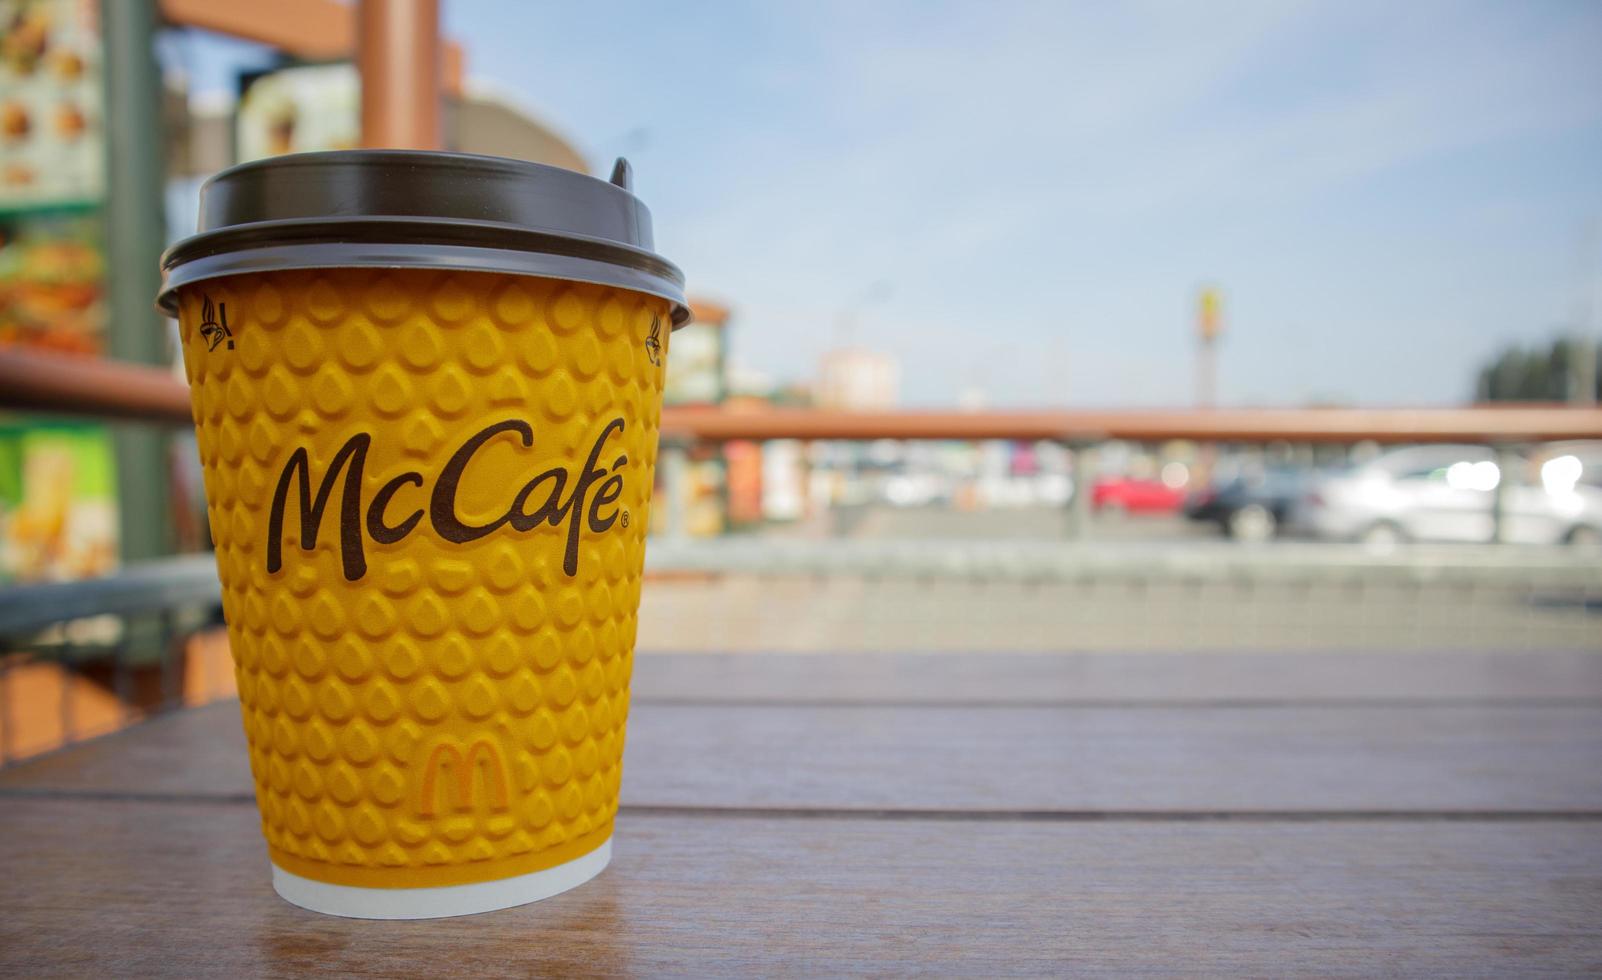 Ukraina, Kiev, 13 september 2021 - McCafe kaffekopp foto